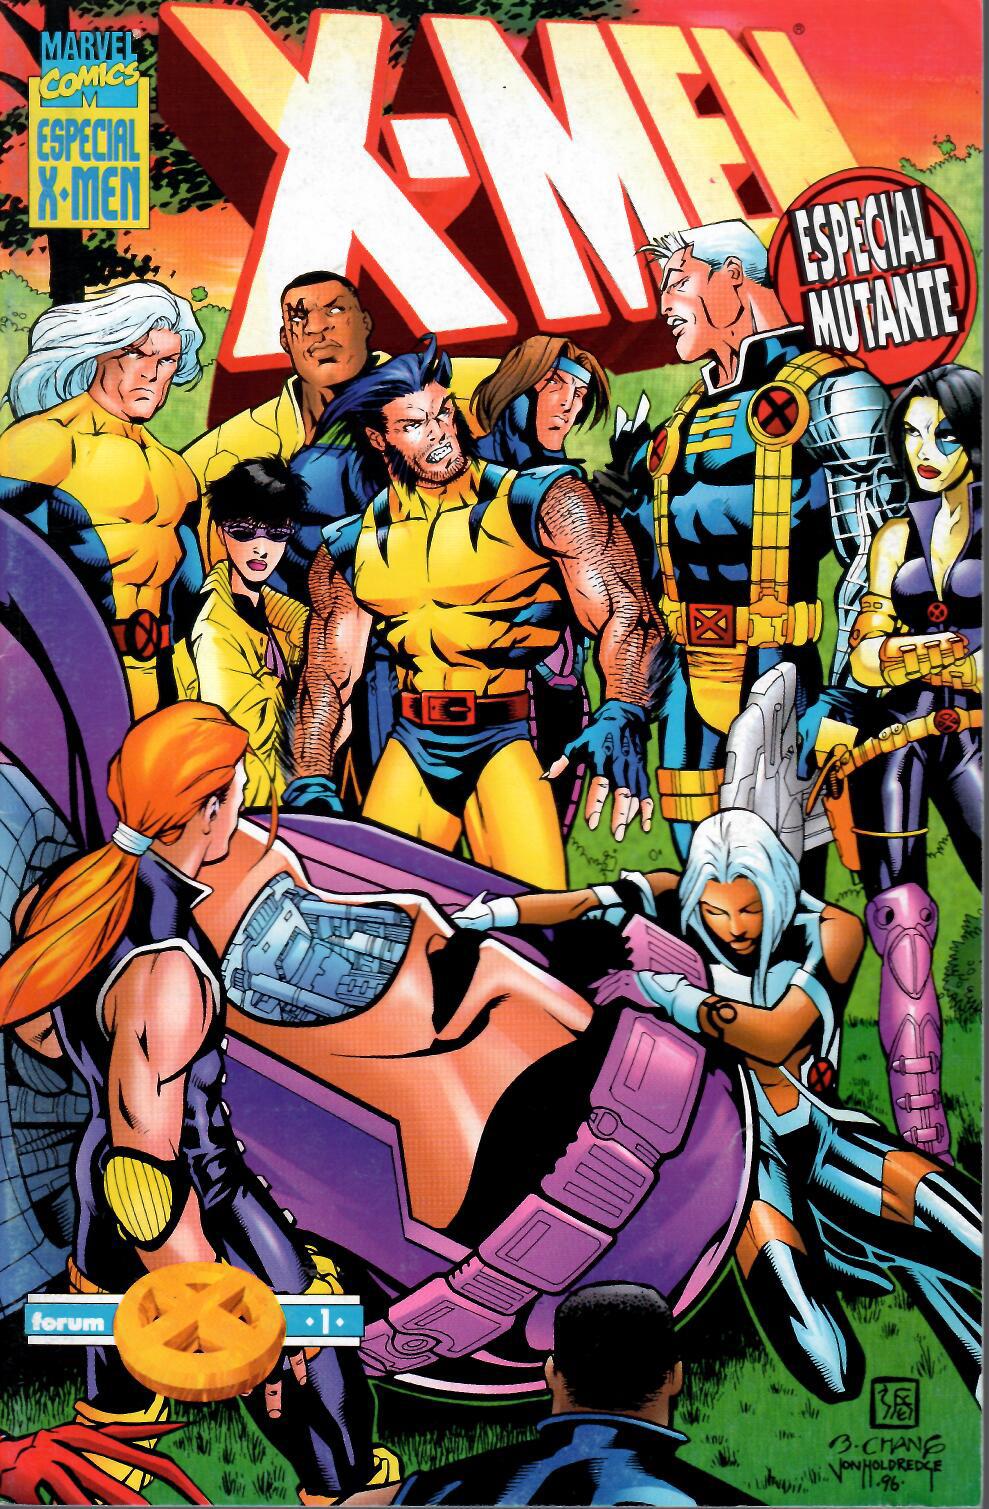 X-Men v2. Forum 1996. Especial Mutante 97